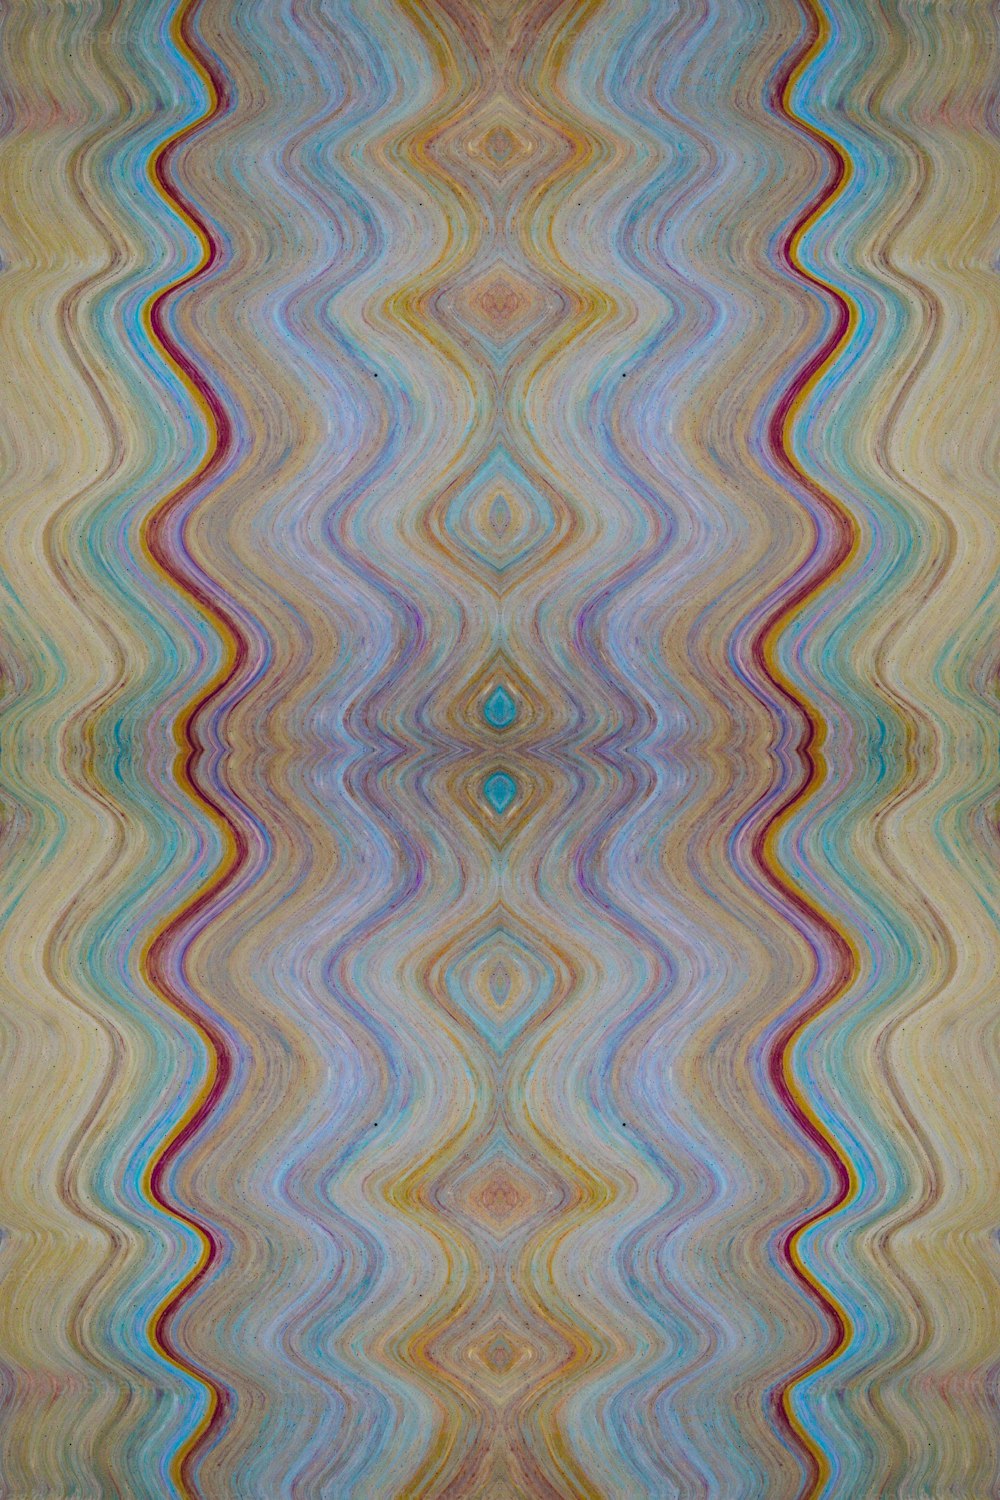 Un fond multicolore aux lignes ondulées